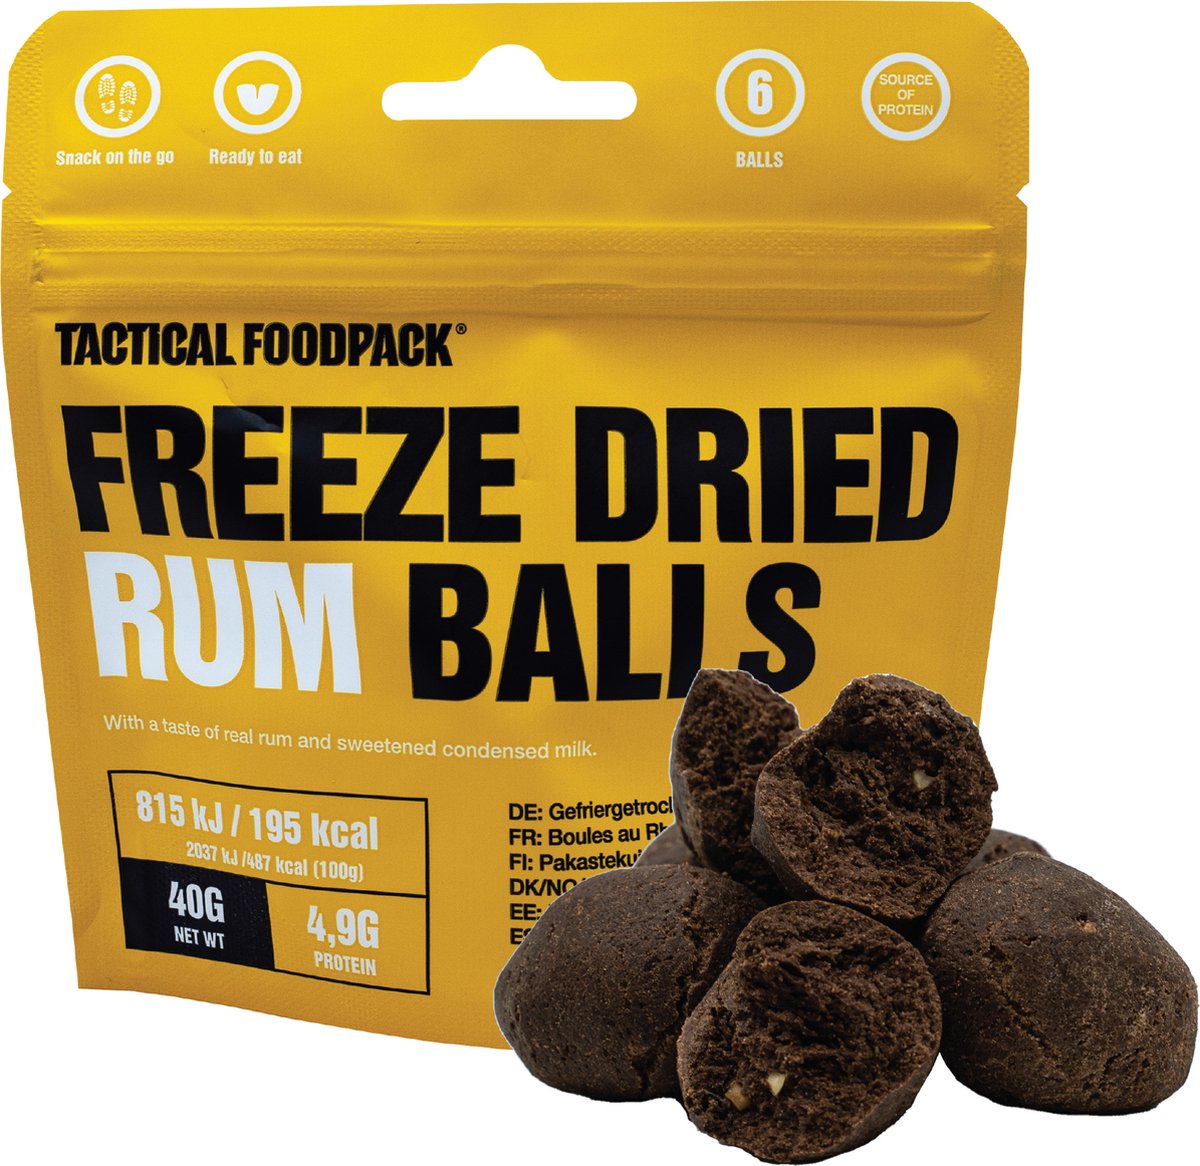 Tactical FoodPack Freeze-Dried Rum Balls (69gram) - Chocolade Rumballen (zonder alcohol) - 195kcal - buitensportvoeding - outdoorsnack - vriesdroog - survival eten - prepper - 8 jaar houdbaar - snackverpakking